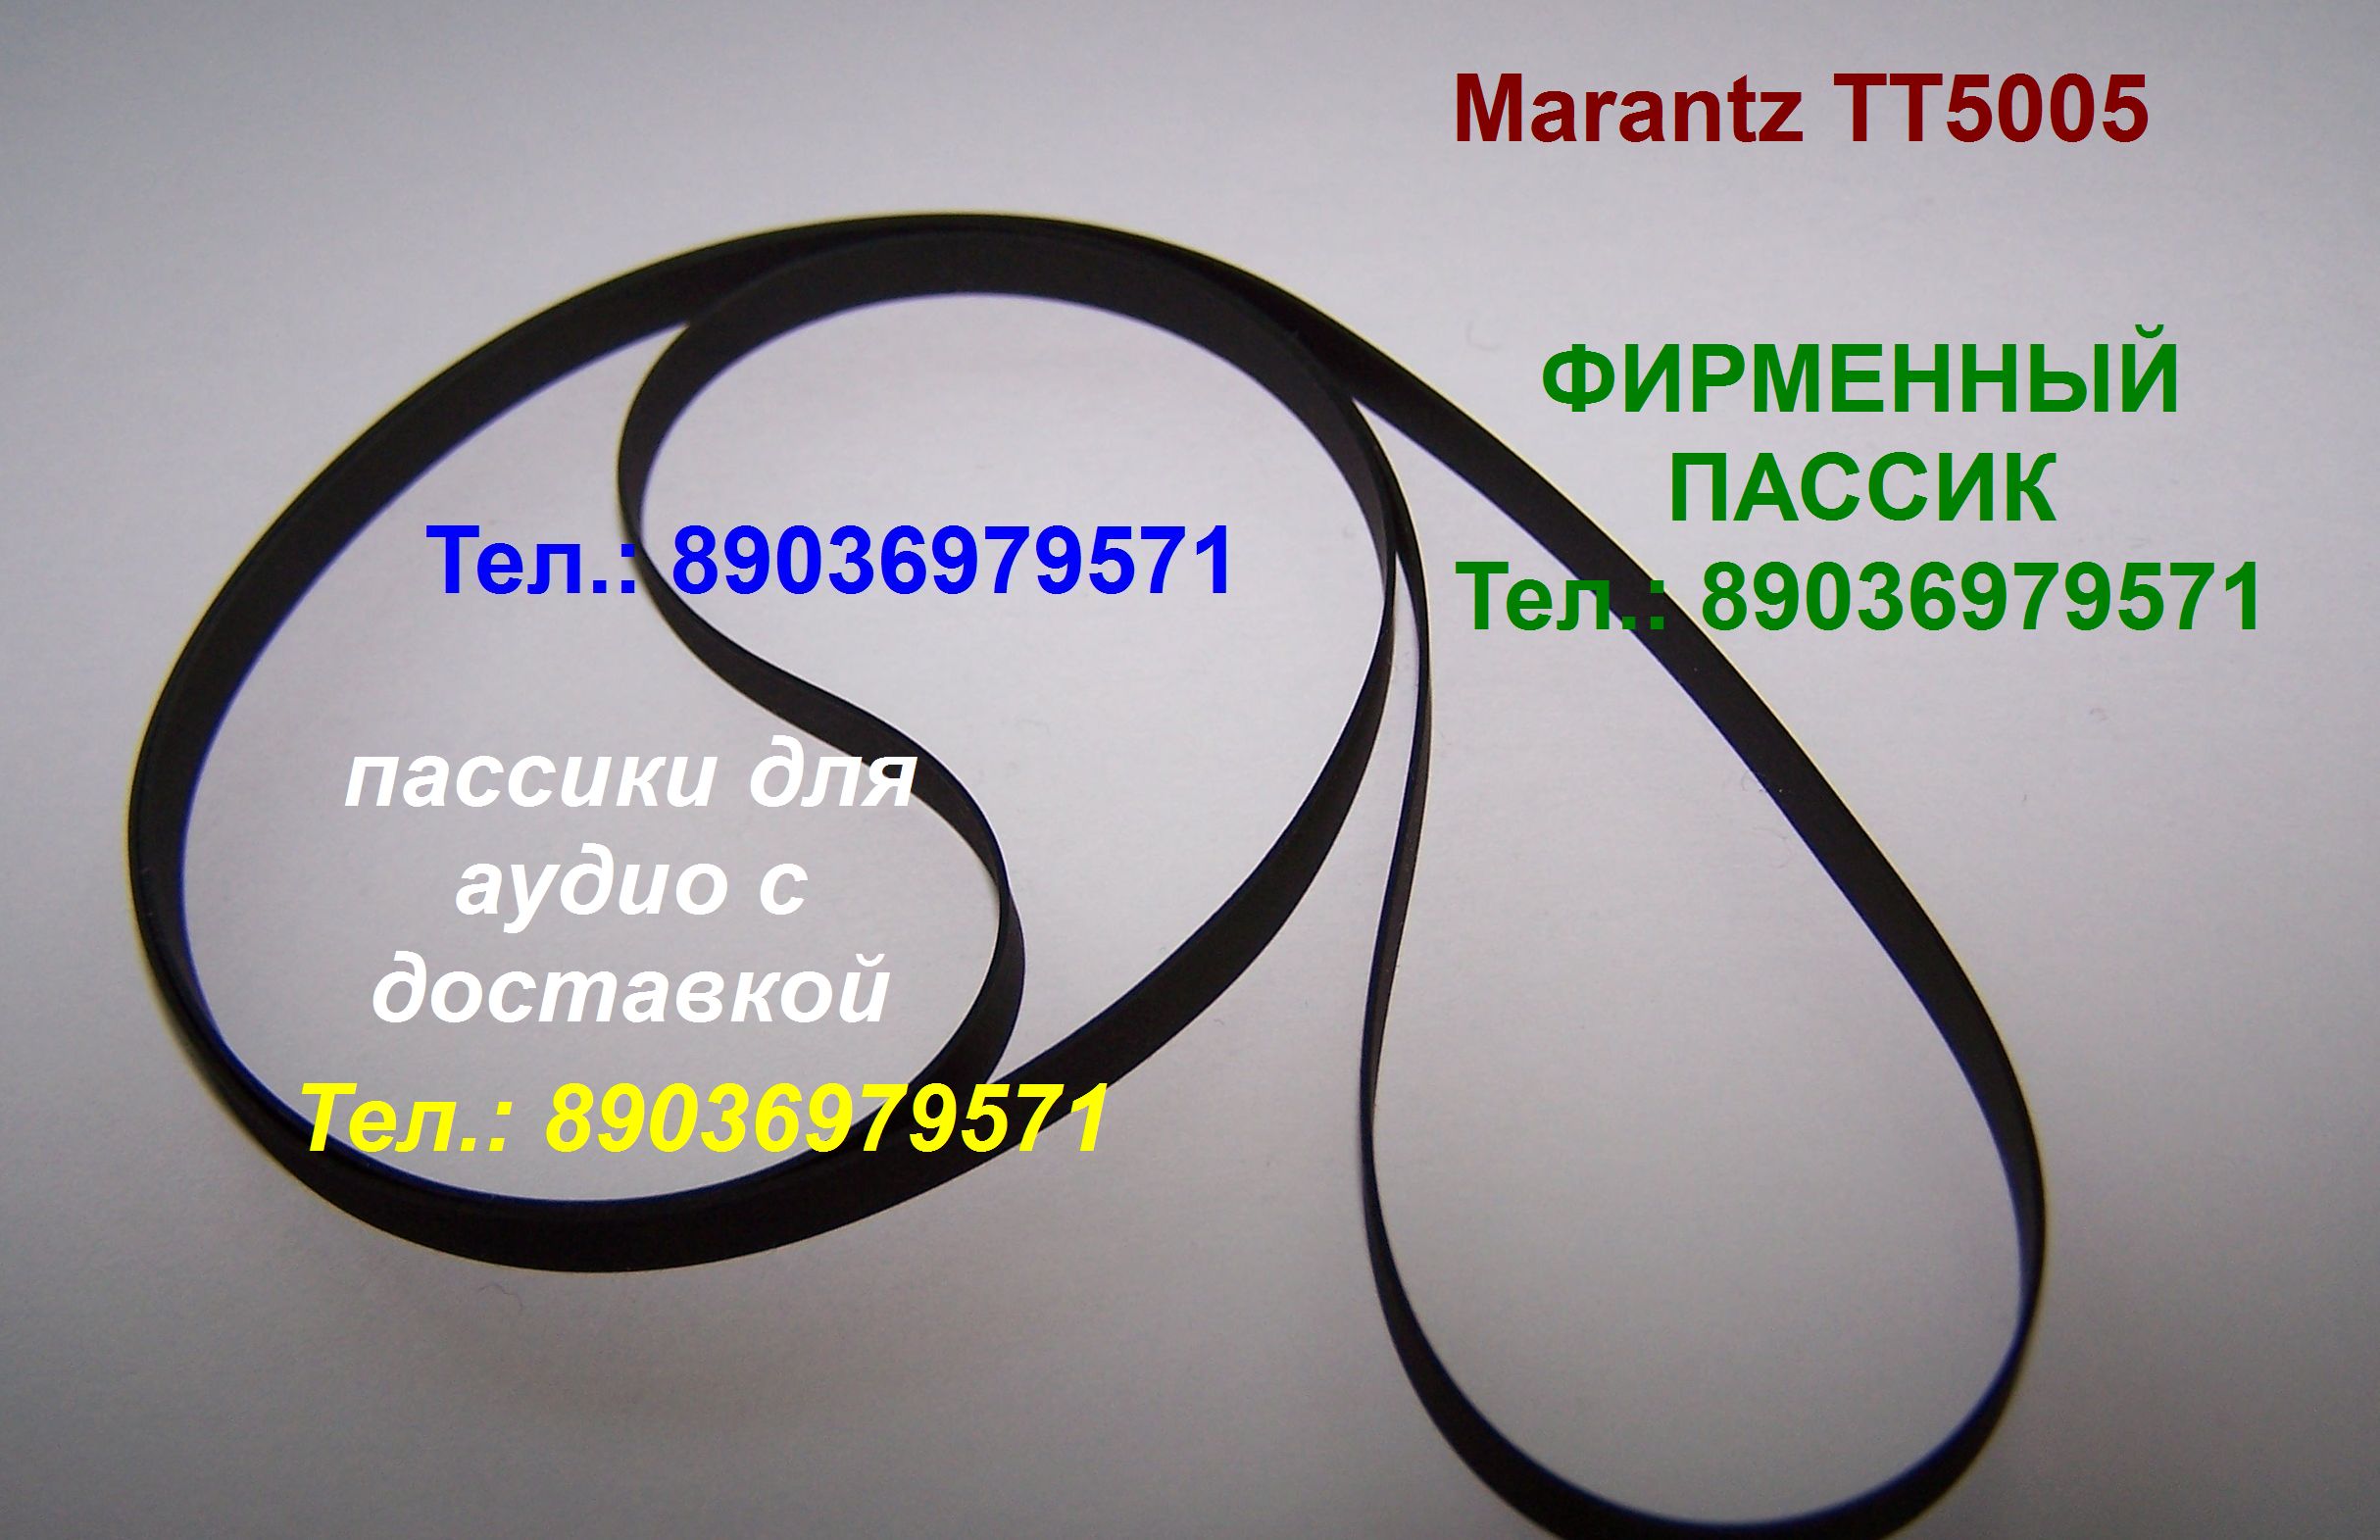 пассик для Marantz TT5005 ремень пасик для Маранц TT 5005 в городе Москва, фото 1, телефон продавца: +7 (903) 697-95-71